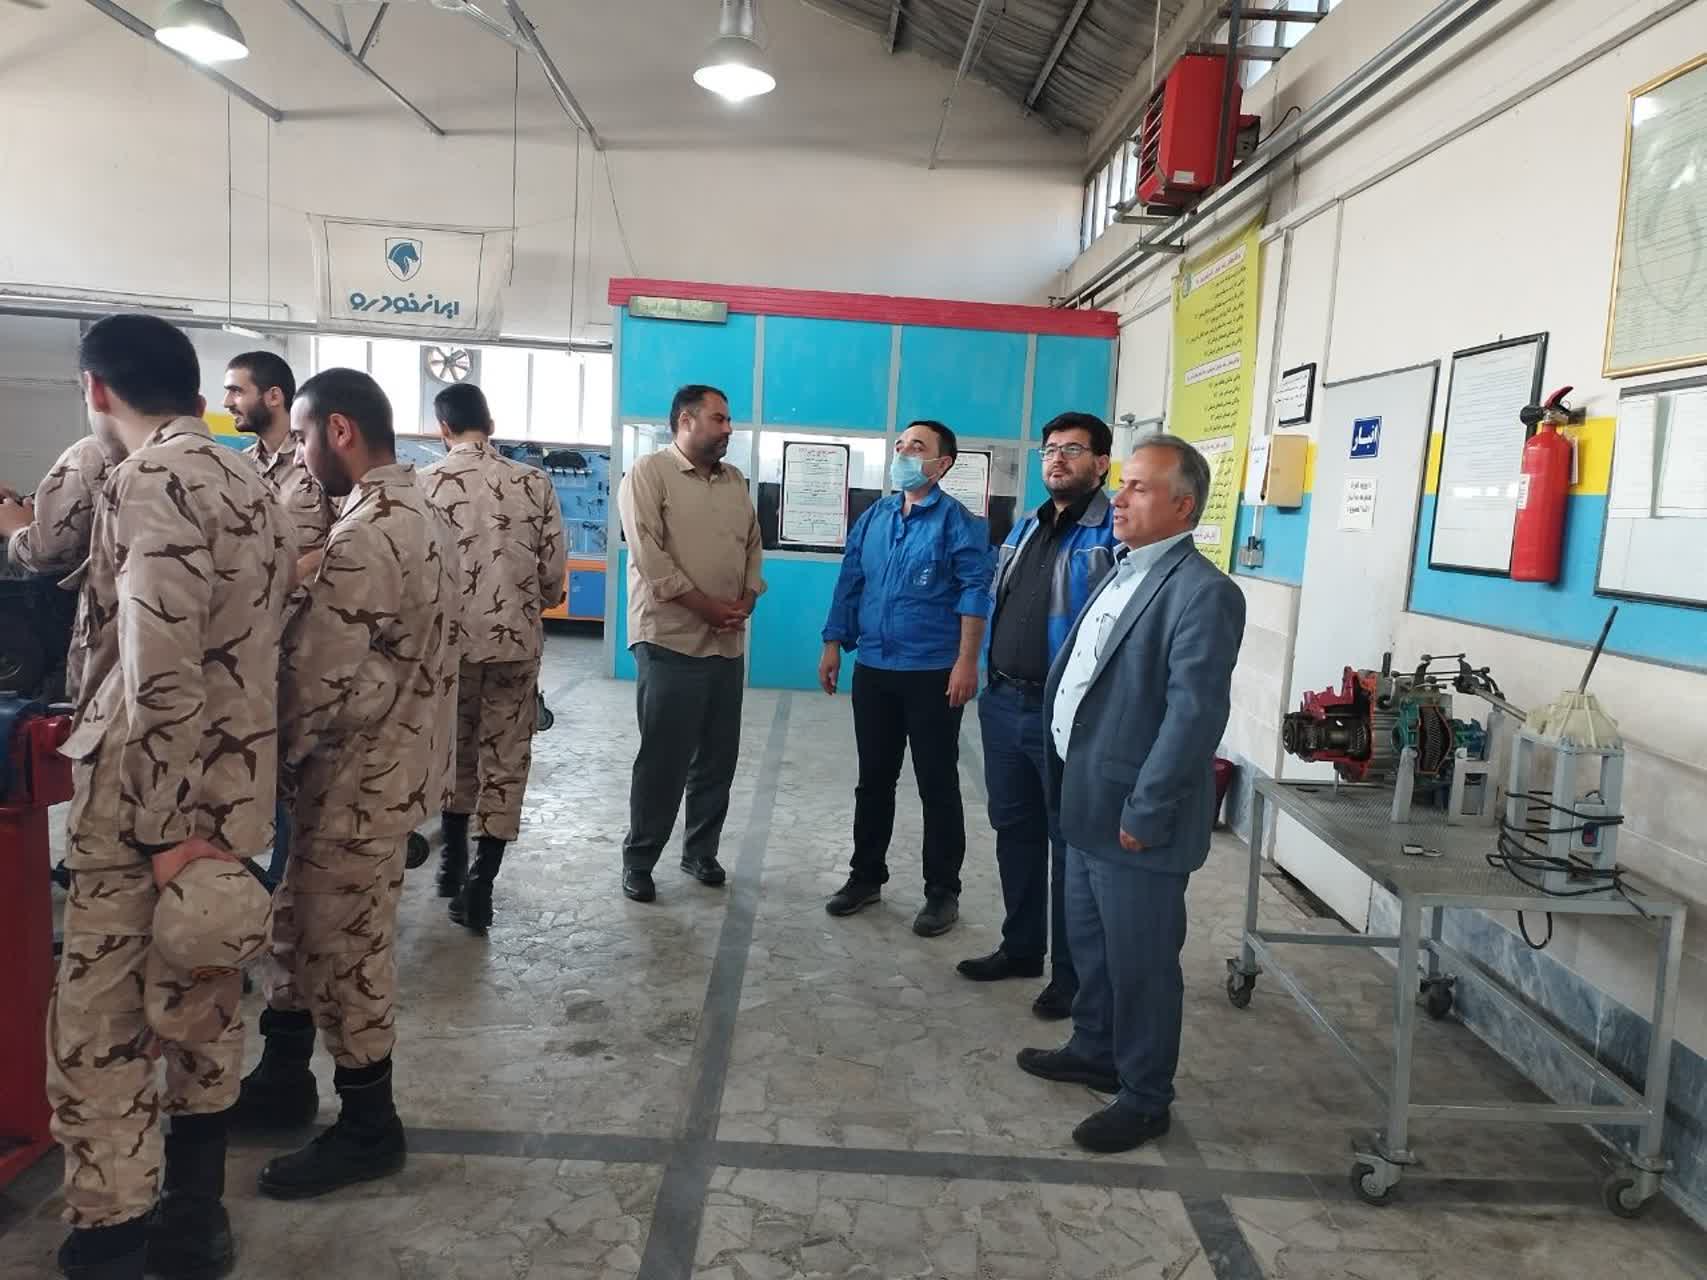 بازدید رئیس مرکز شهید مطهری و مسول آموزش سپاه استان گیلان از کارگاه آموزشی مکانیک خودرو 